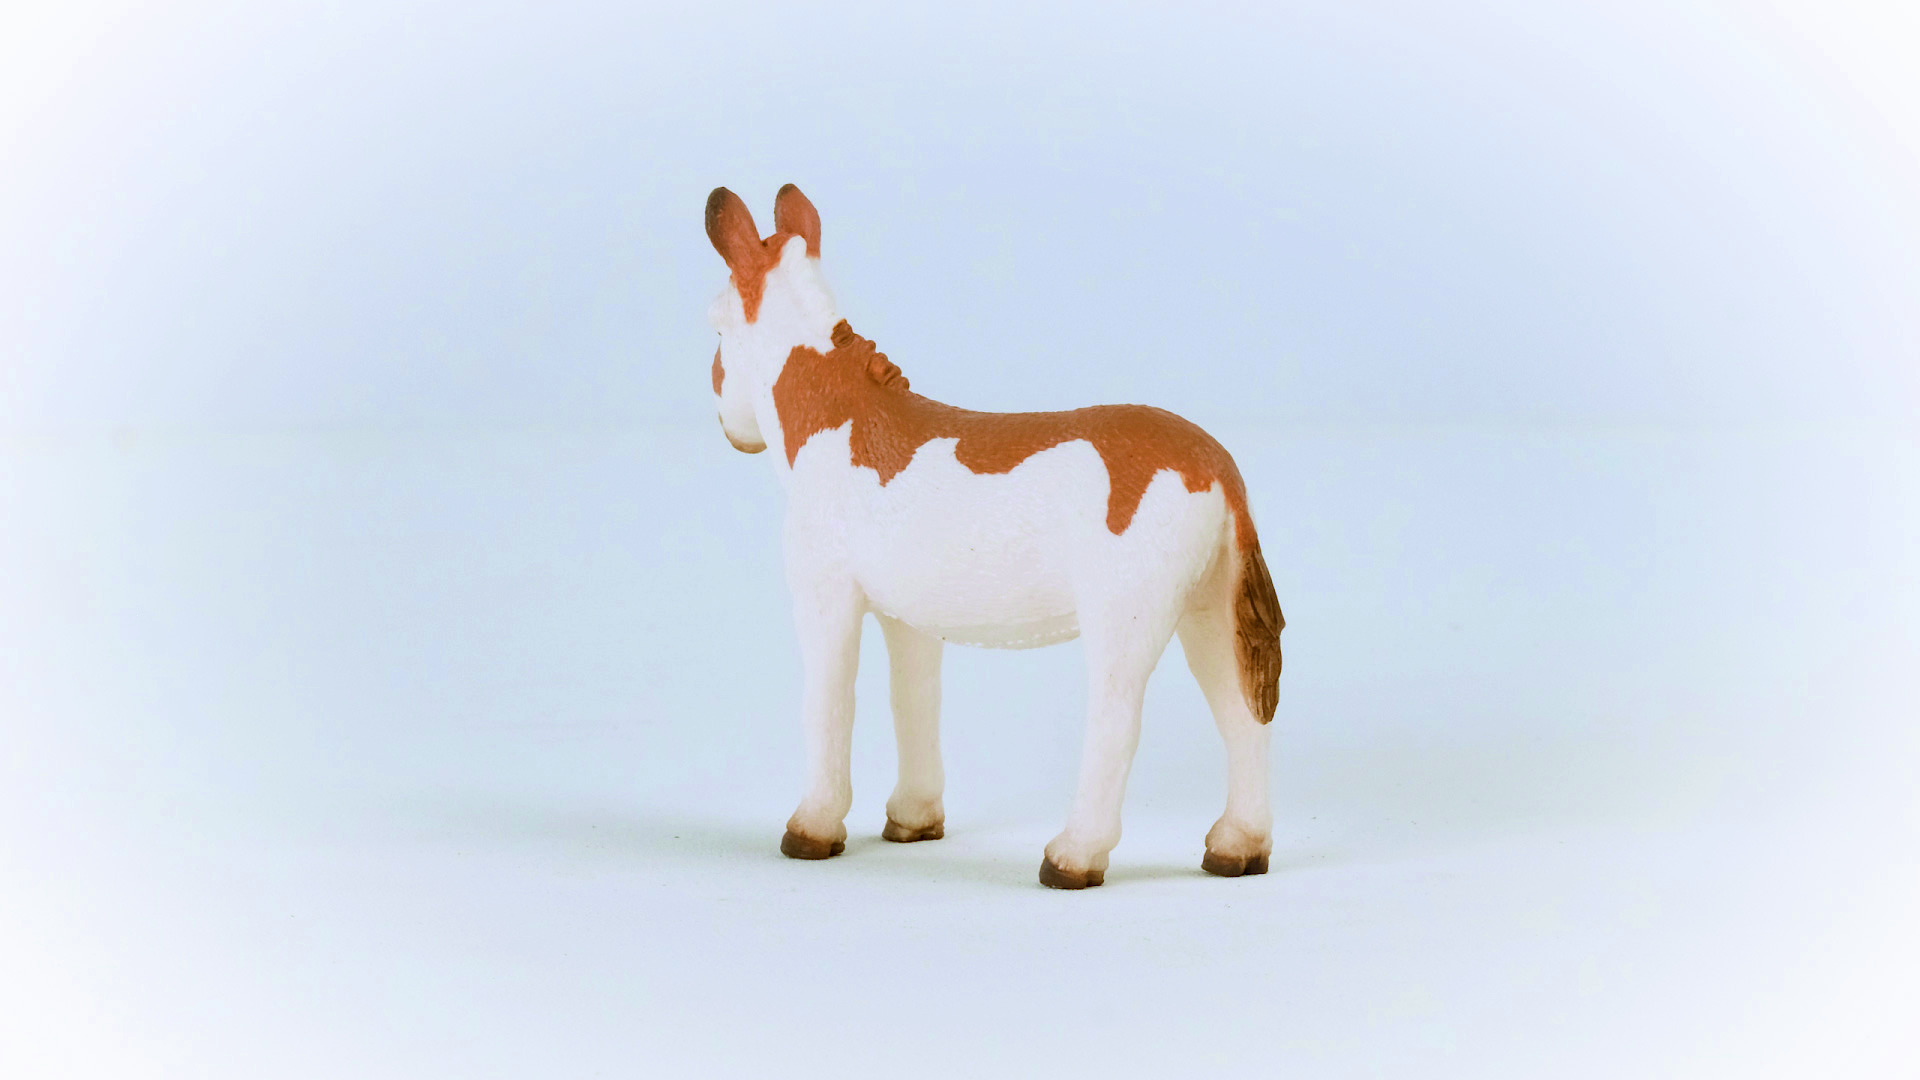 SCHLEICH 13961 Amerikanischer Esel, gefleckt Weiß/Braun Spielfigur